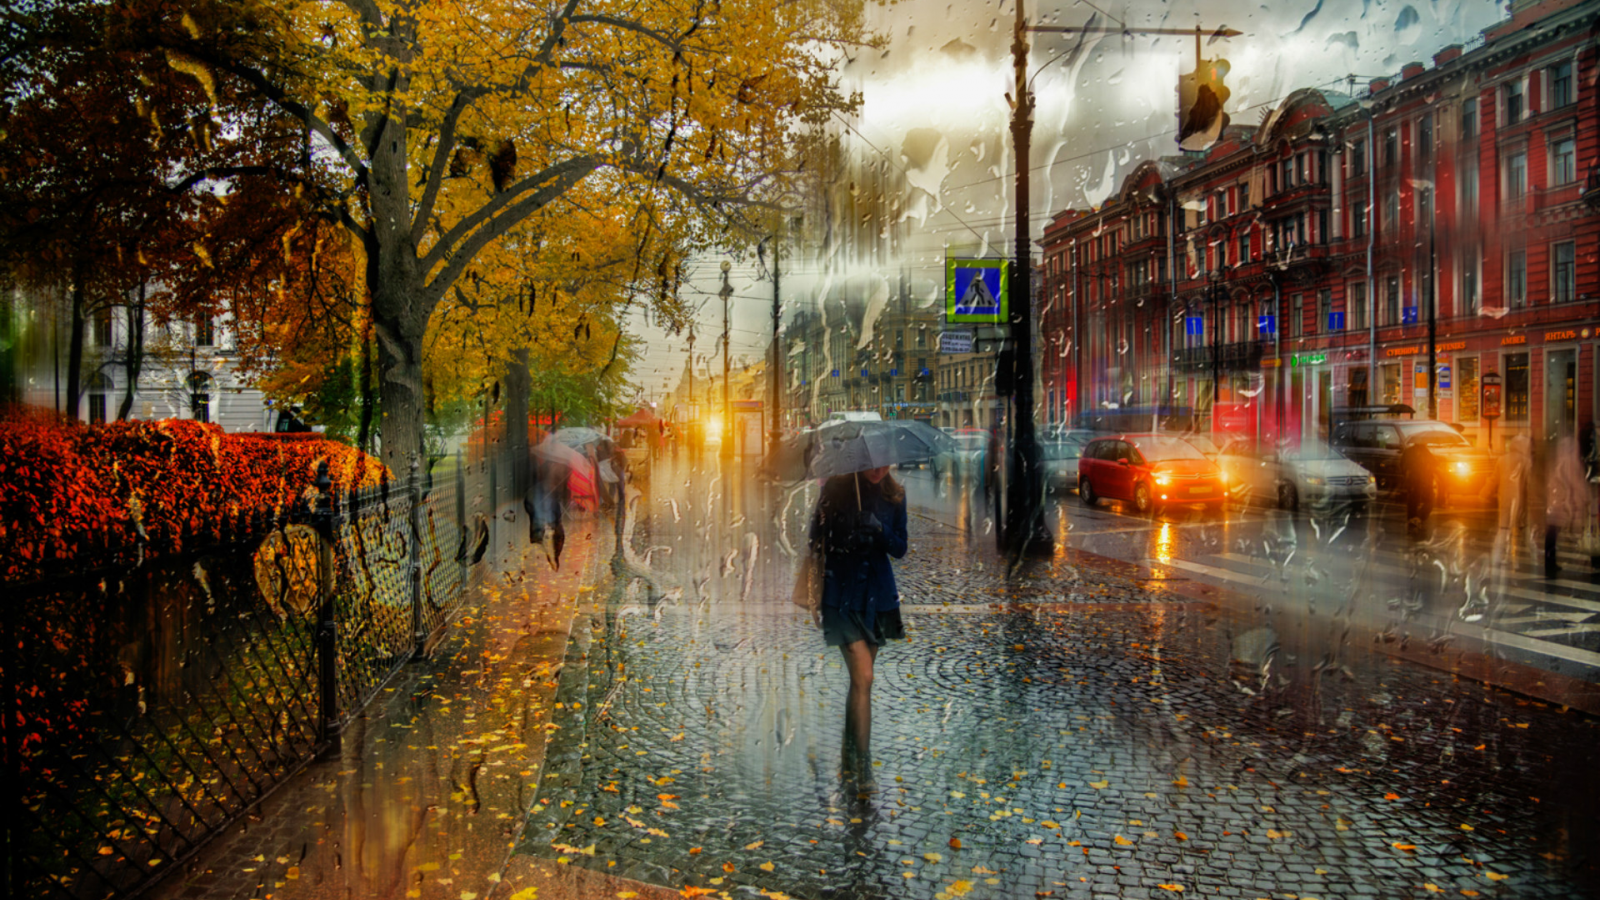 осень, город, улица, дождь, прохожие, зонтик